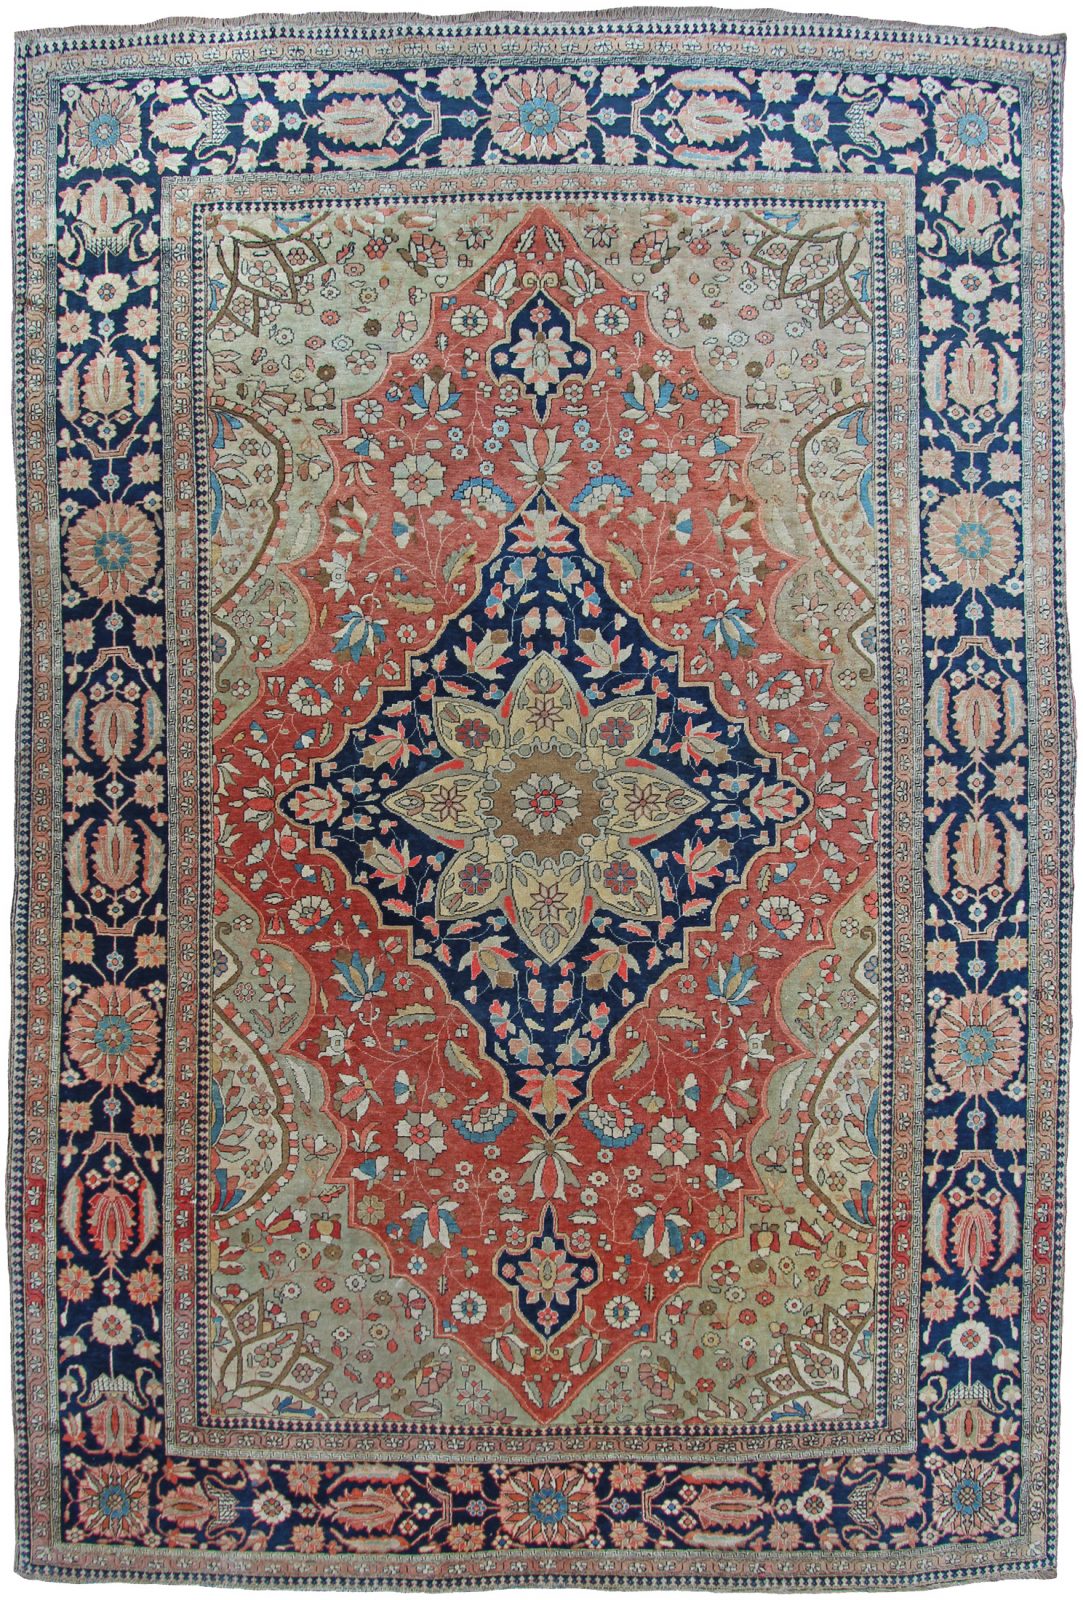 Antique Mohtasham Kashan rug, Persia - Farnham Antique Carpets